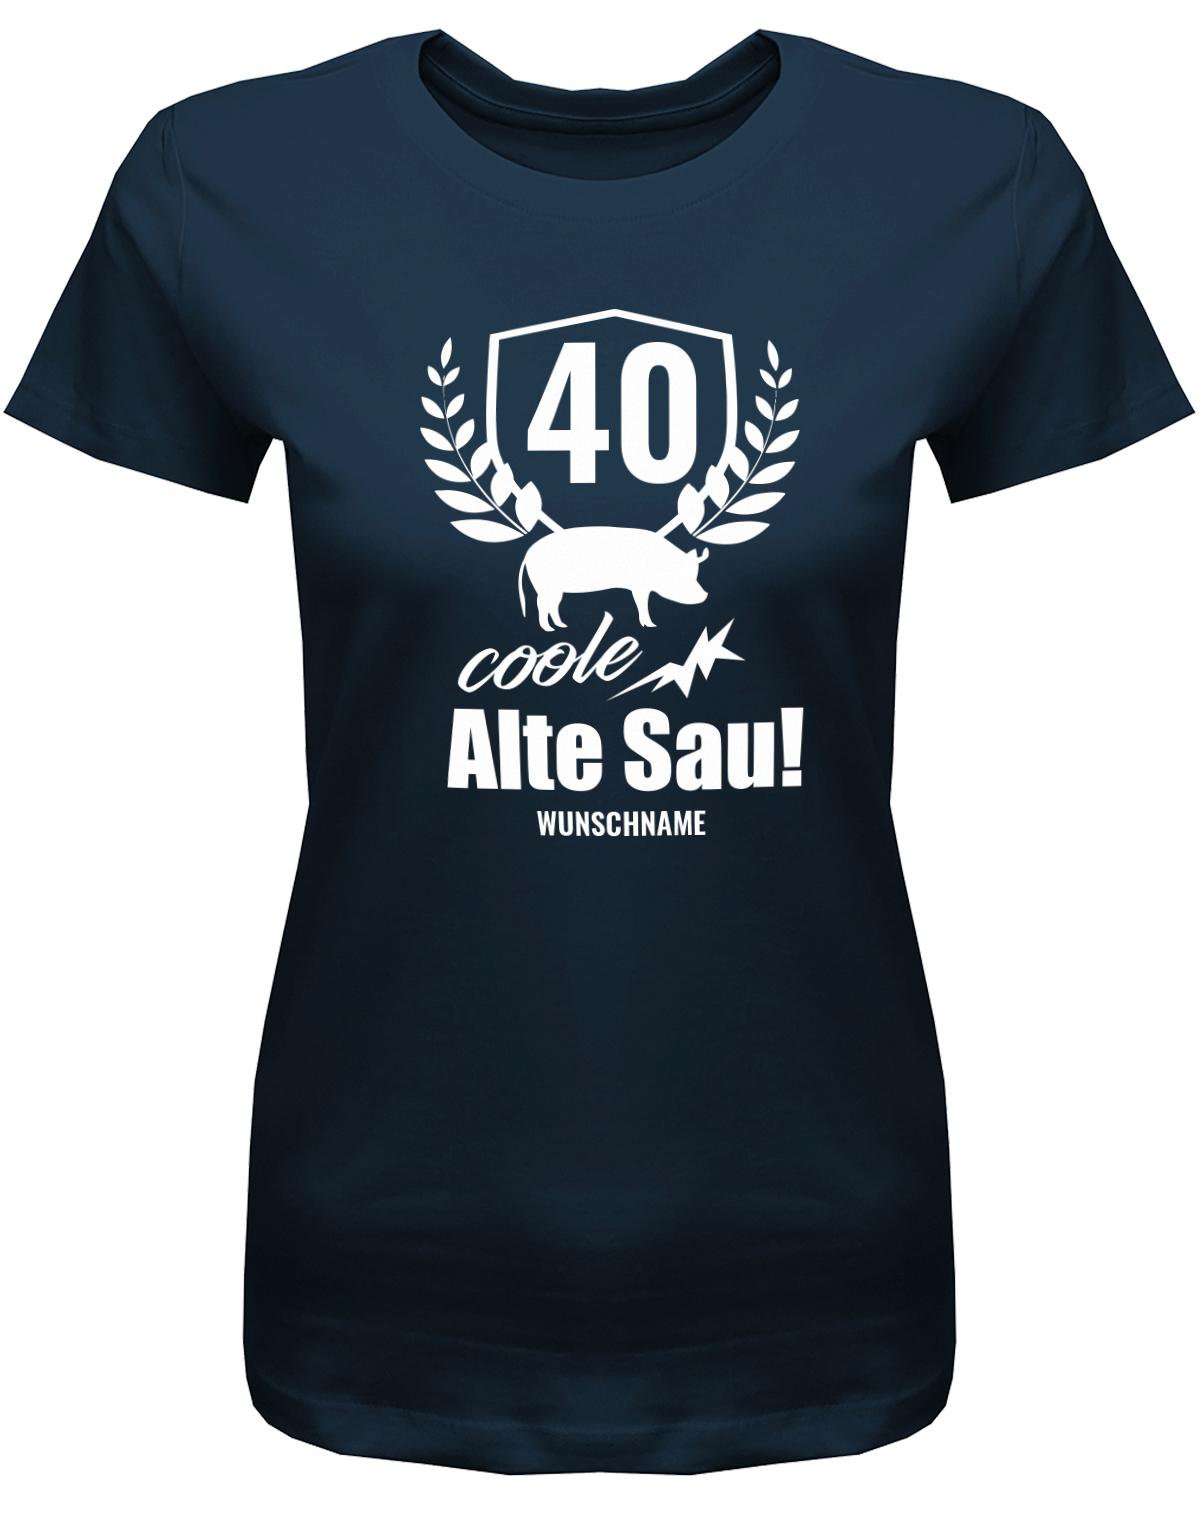 Lustiges T-Shirt zum 40. Geburtstag für die Frau Bedruckt mit 40 coole alte Sau personalisiert mit Name. Navy